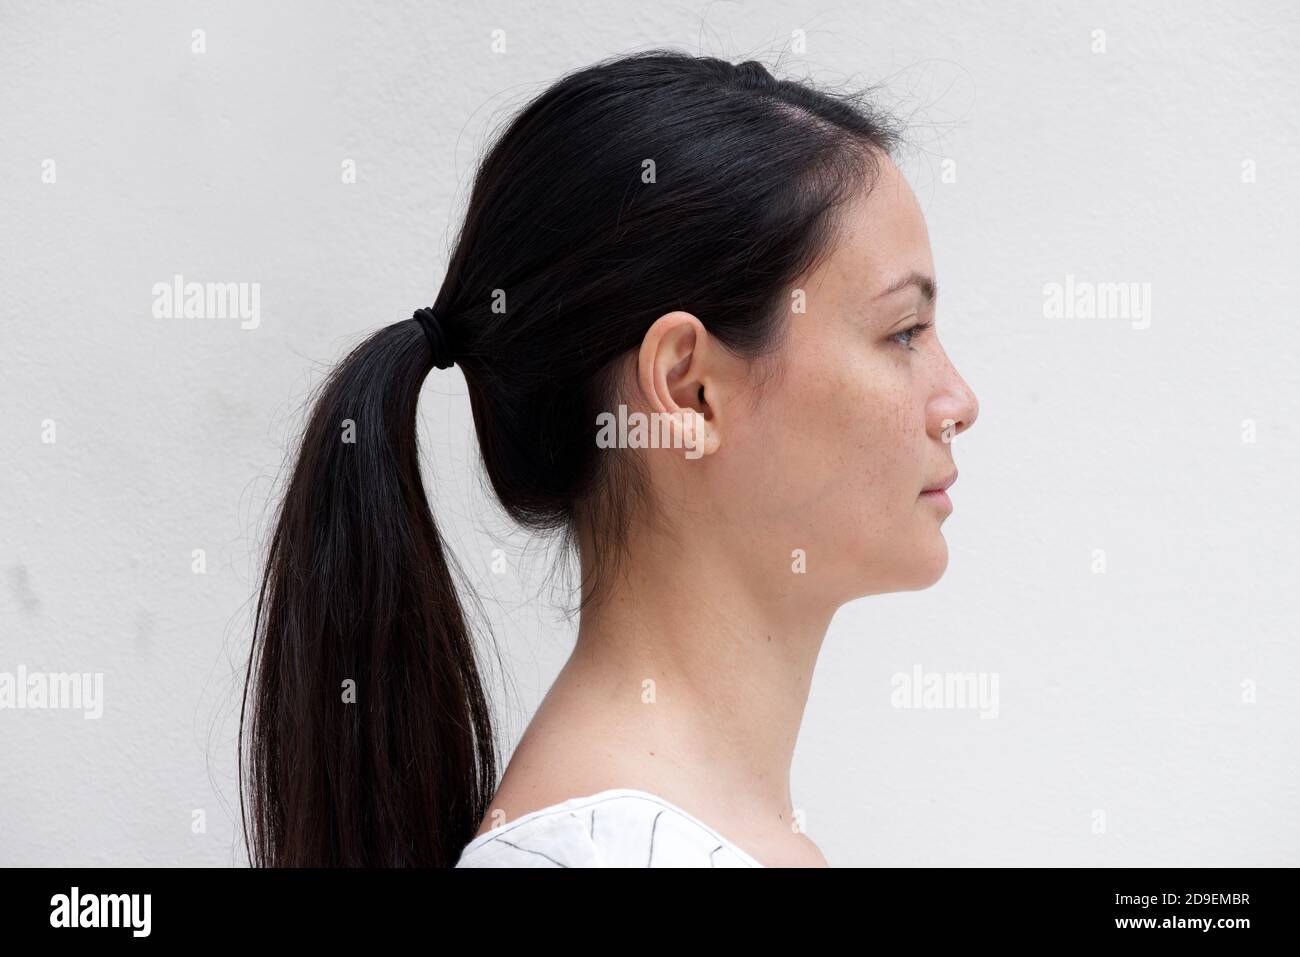 Gros plan portrait de profil jeune femme asiatique avec une expression sérieuse sur fond blanc Banque D'Images